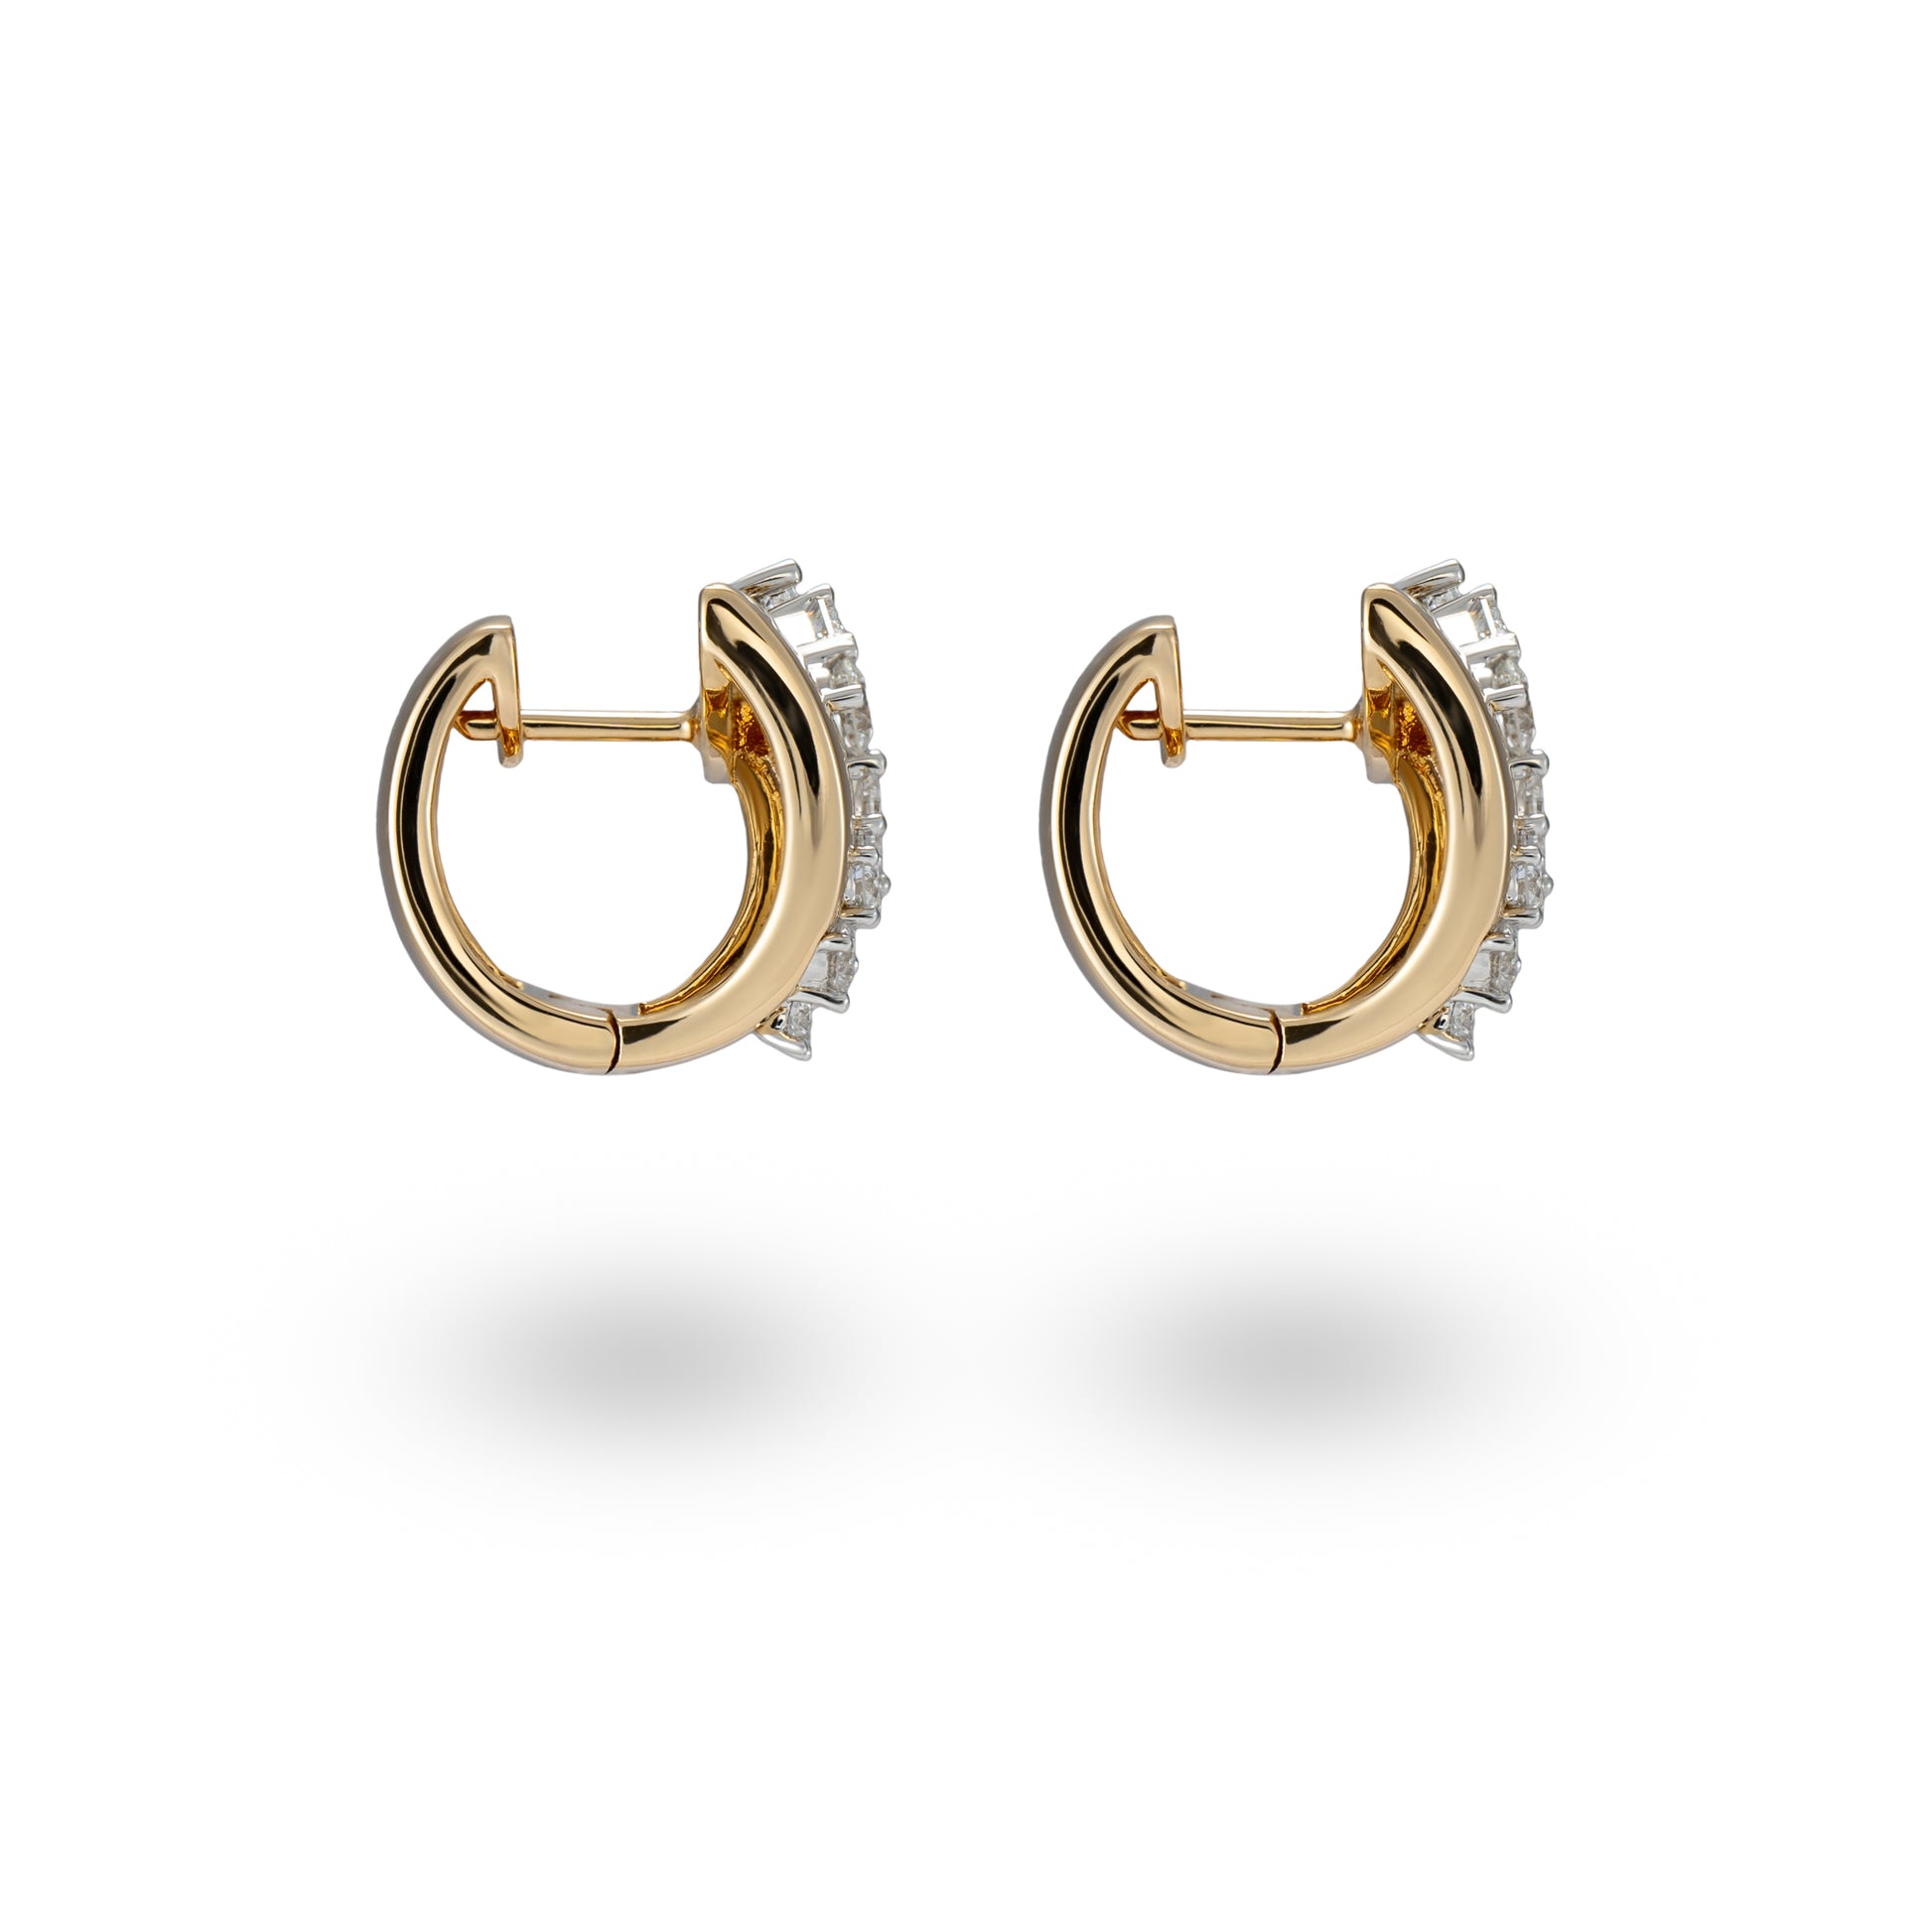 18K White & Rose Gold, Fancy Shape Diamond Earrings - K.S. Sze & Sons